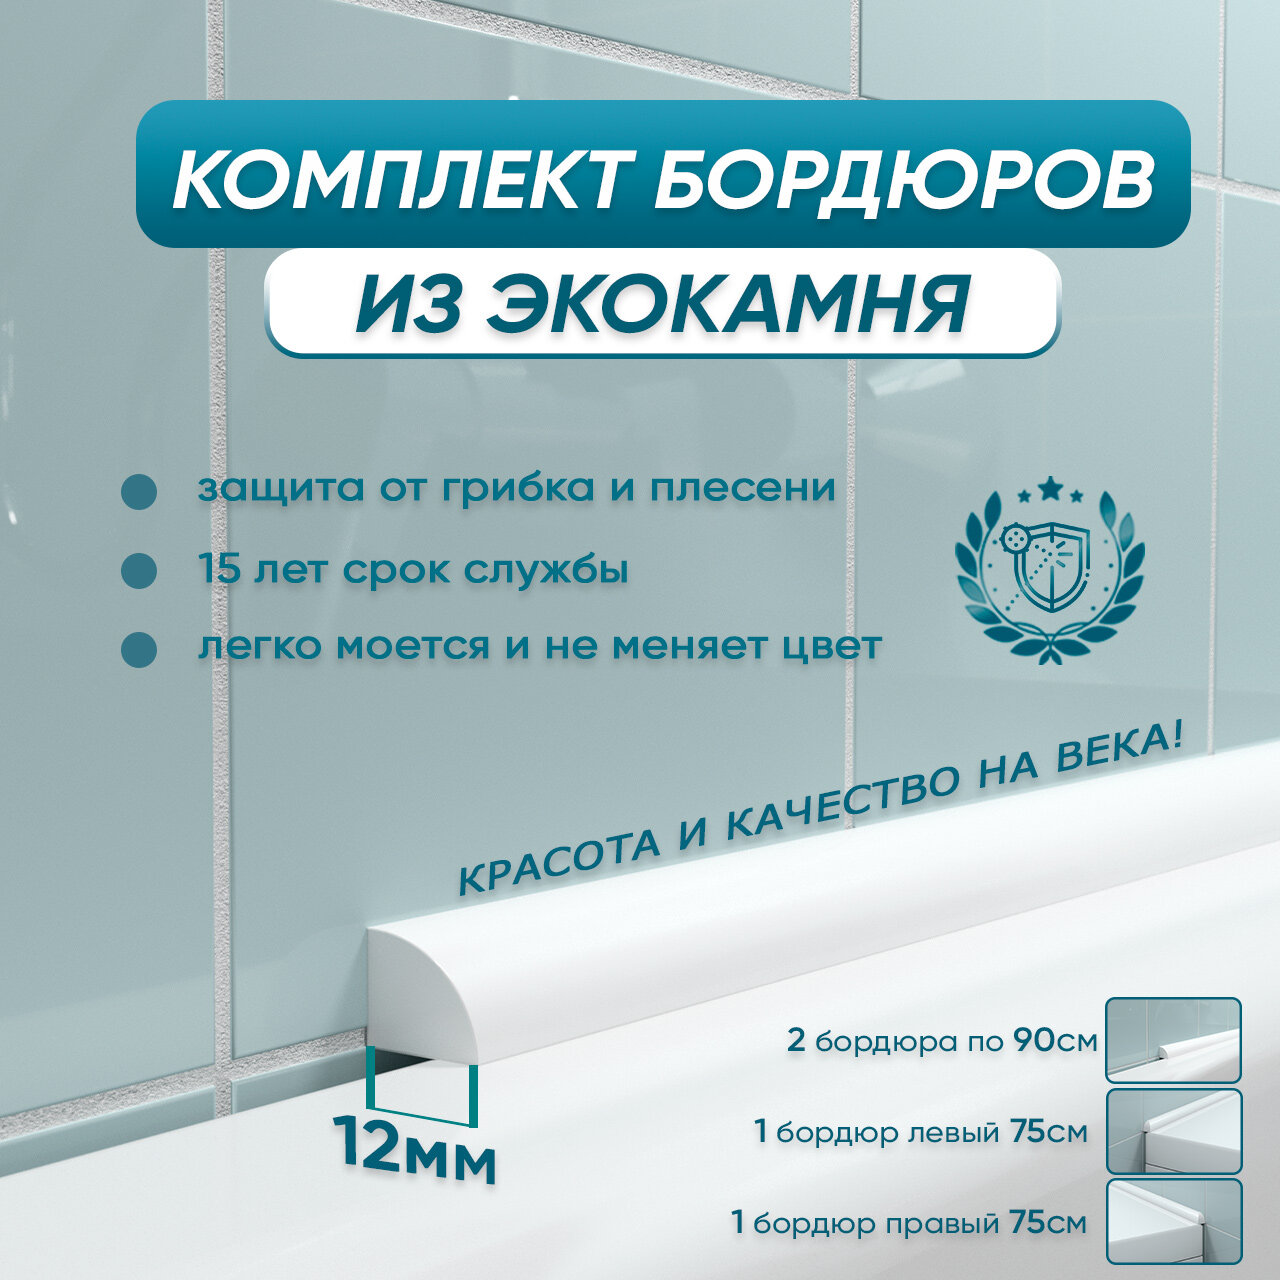 Комплект акриловых бордюров для ванны BNV ПШ12 (4шт), белый цвет, глянцевая поверхность